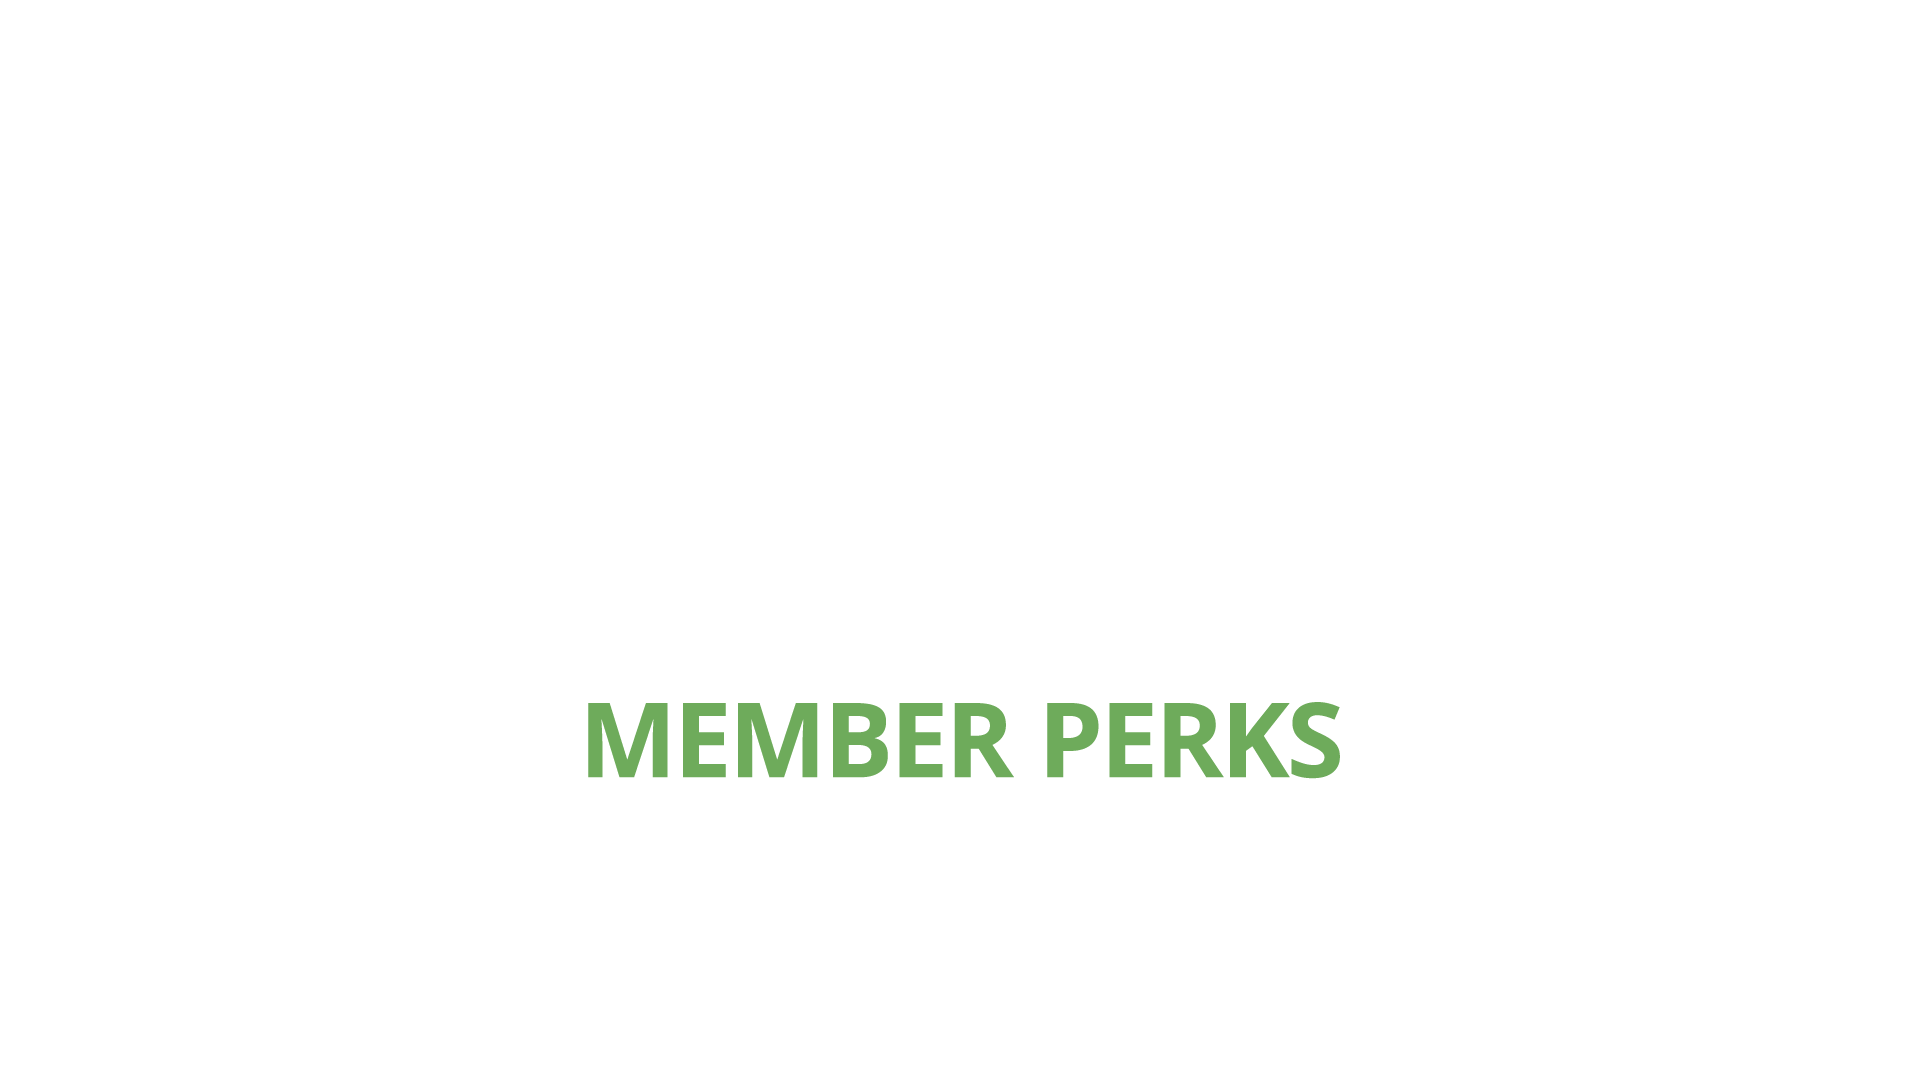 Membership perks